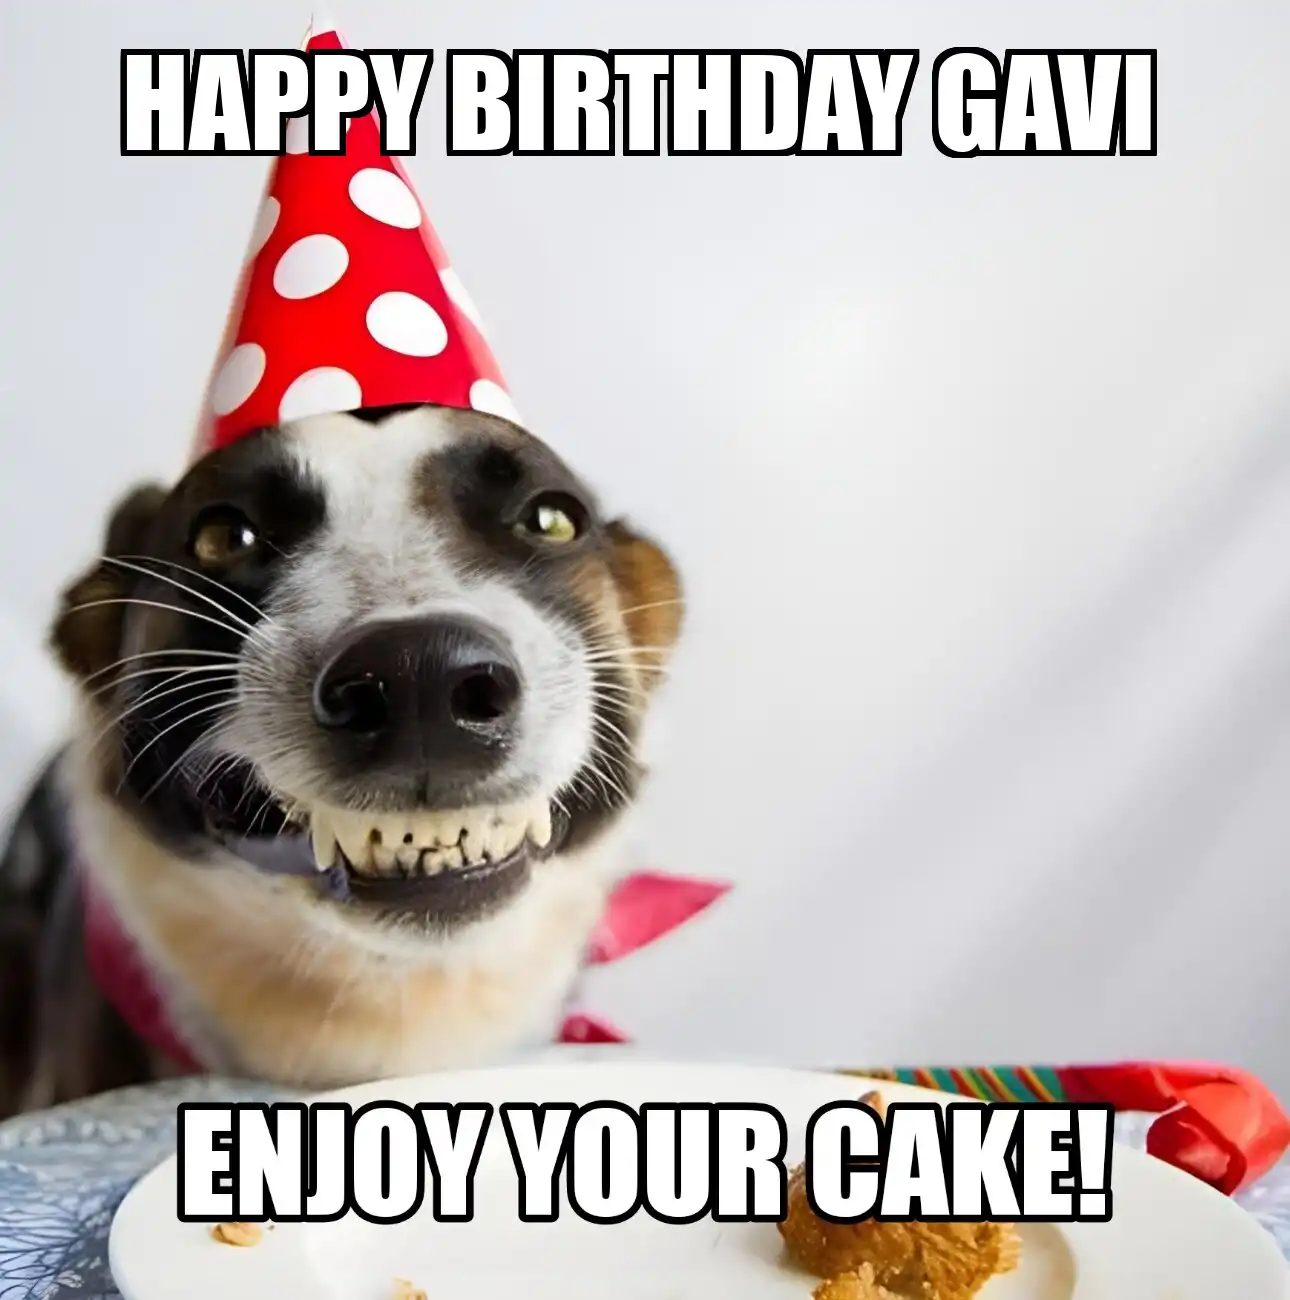 Happy Birthday Gavi Enjoy Your Cake Dog Meme